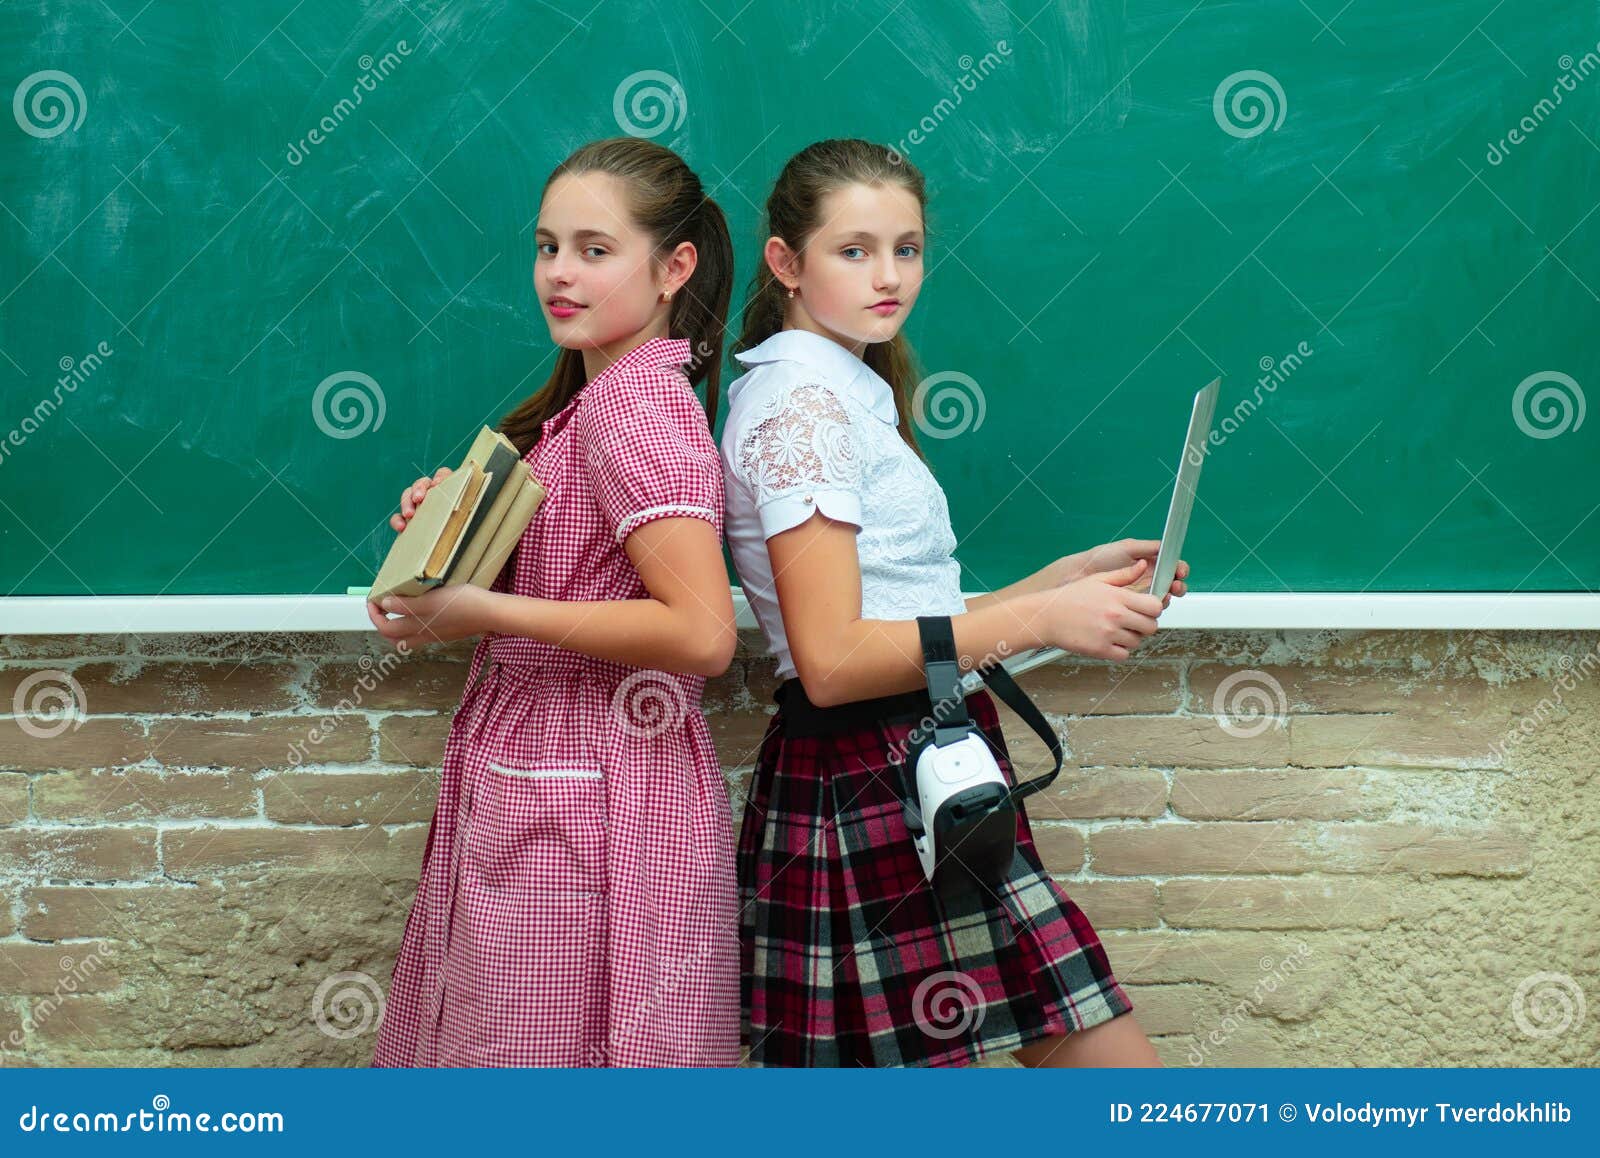 Young Teen Girls School